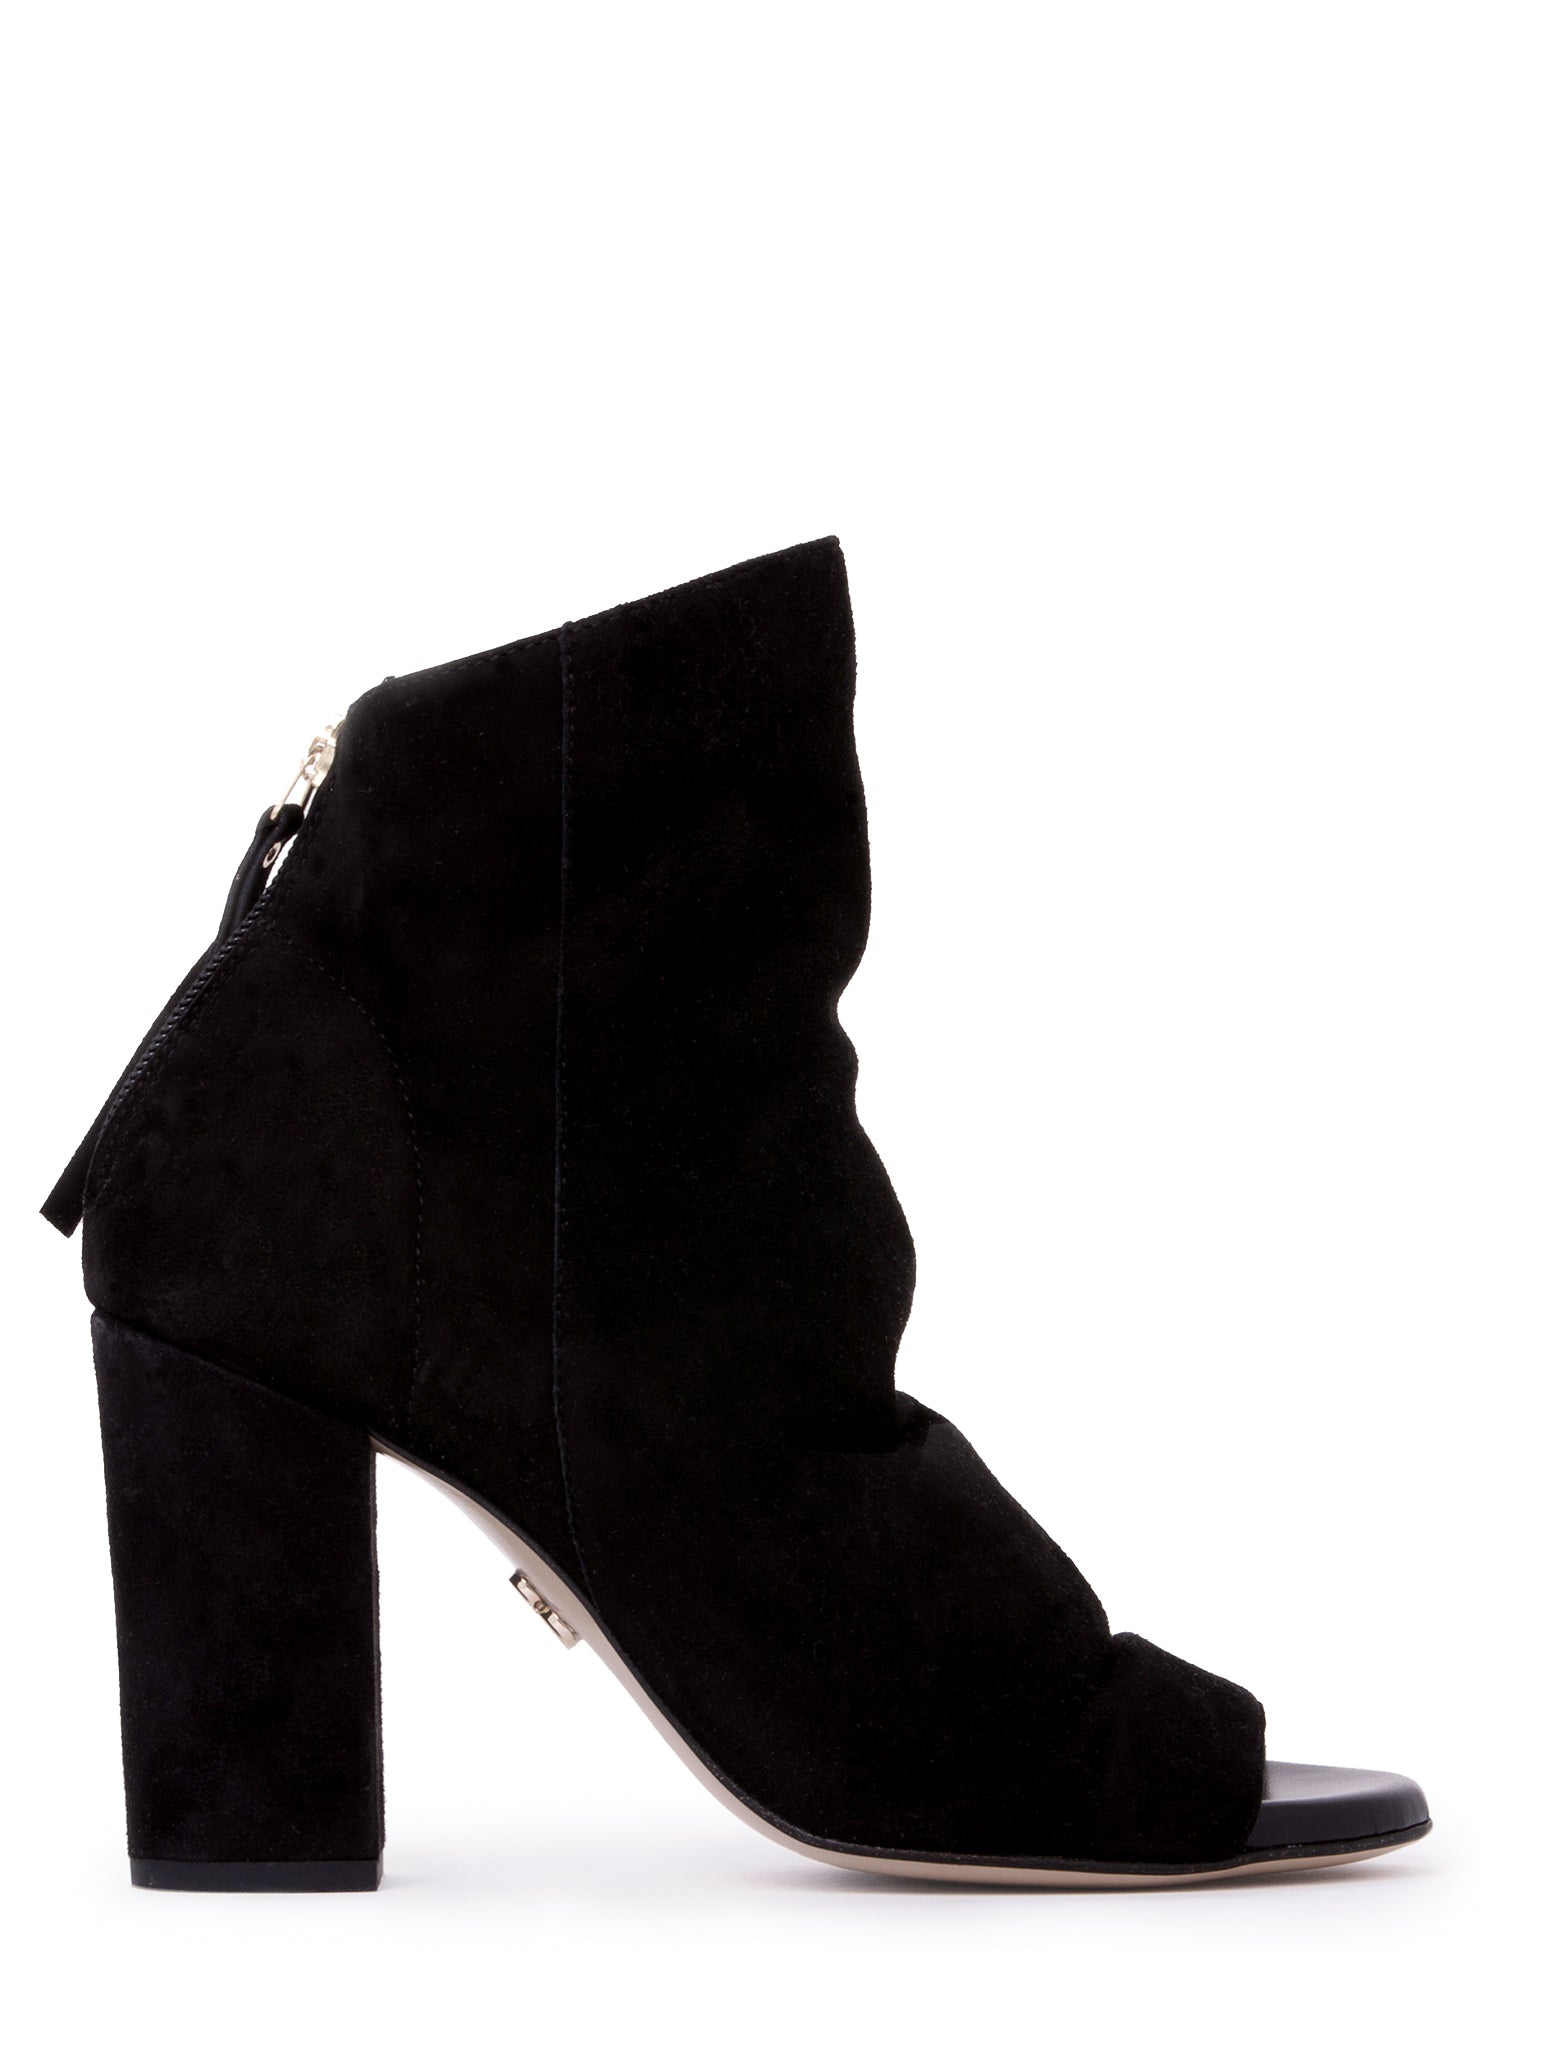 Women’s Hedy Black Work Evening Shootie Bootie Block Heel Suede 3.5 Uk Beautiisoles by Robyn Shreiber Made in Italy